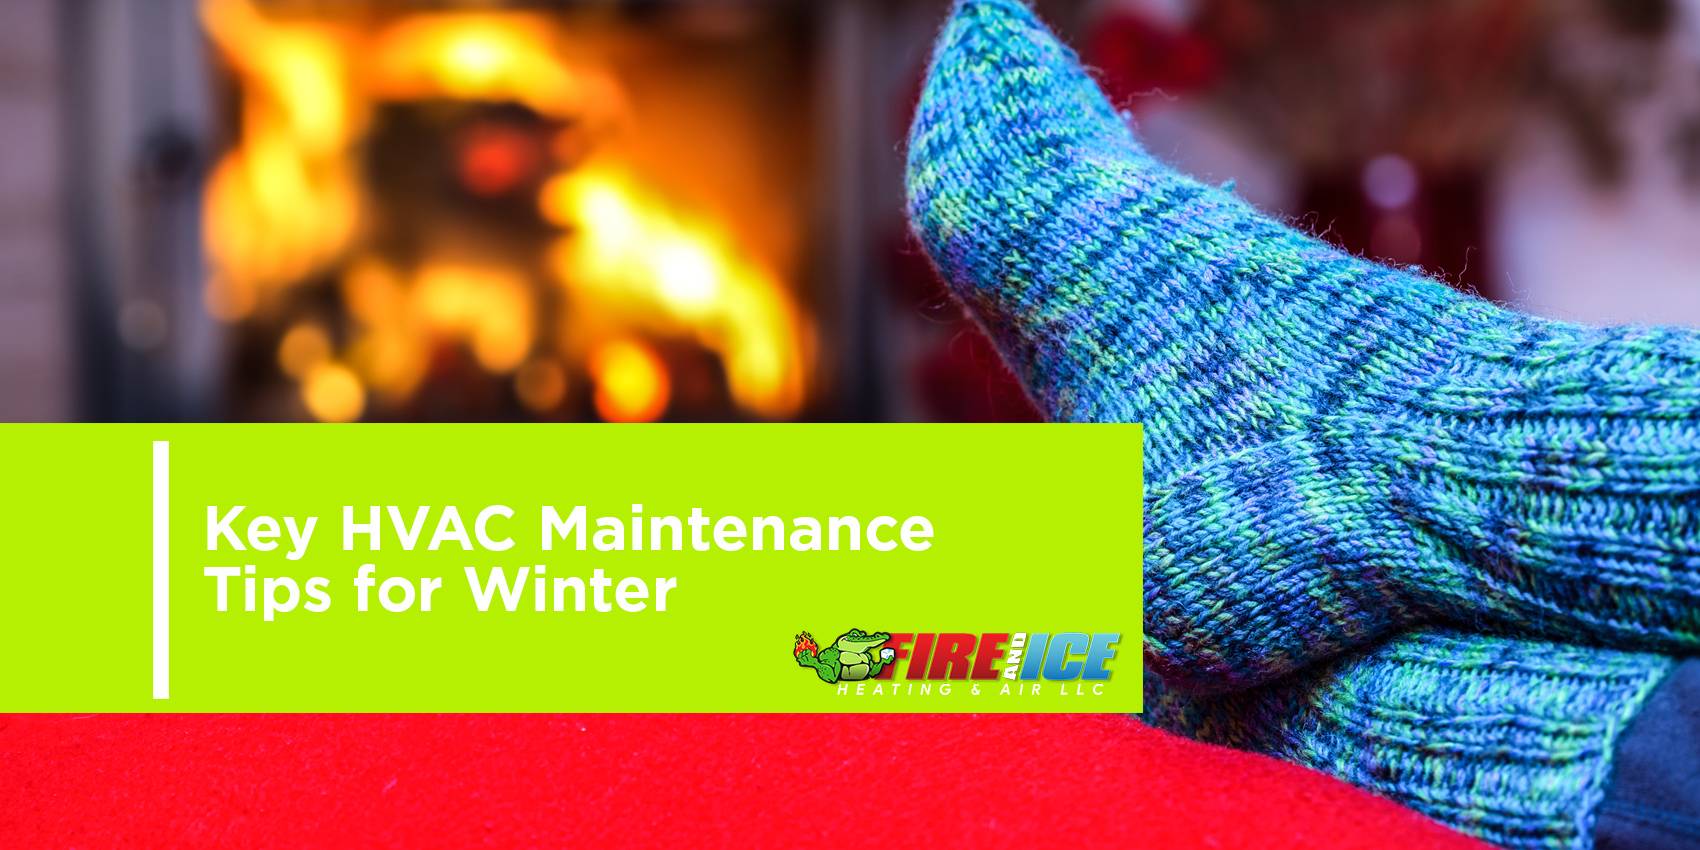 Key HVAC Maintenance Tips for Winter